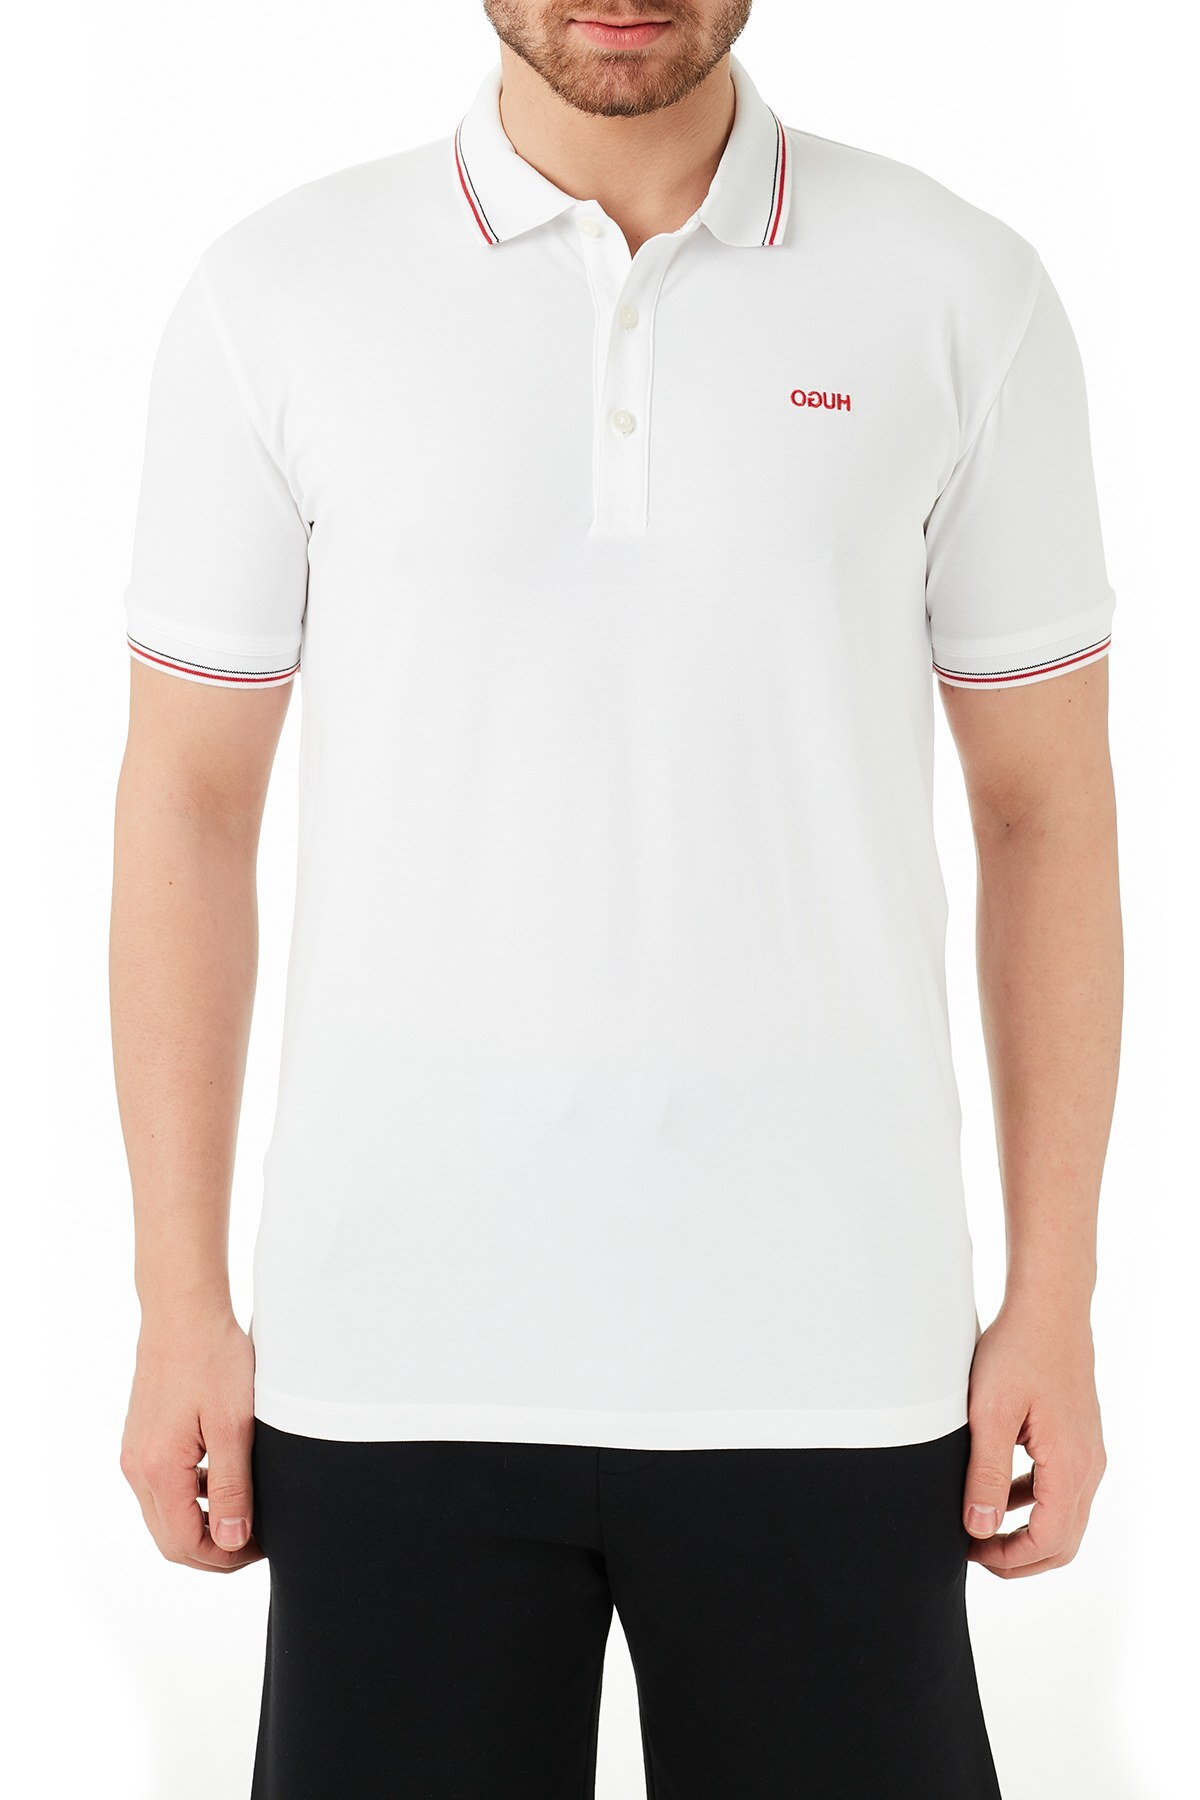 Hugo Boss Pamuklu Slim Fit T Shirt Erkek Polo 50448780 100 BEYAZ